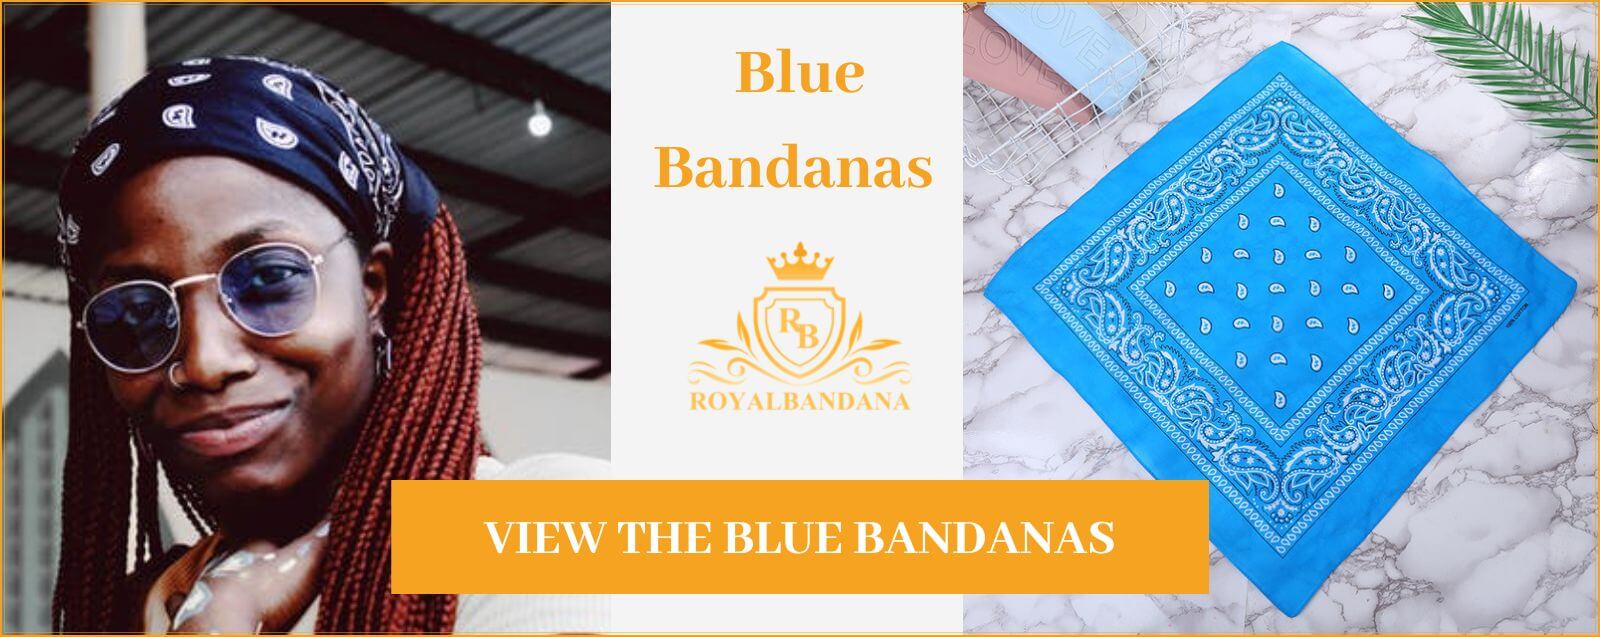 bandana-color-blue